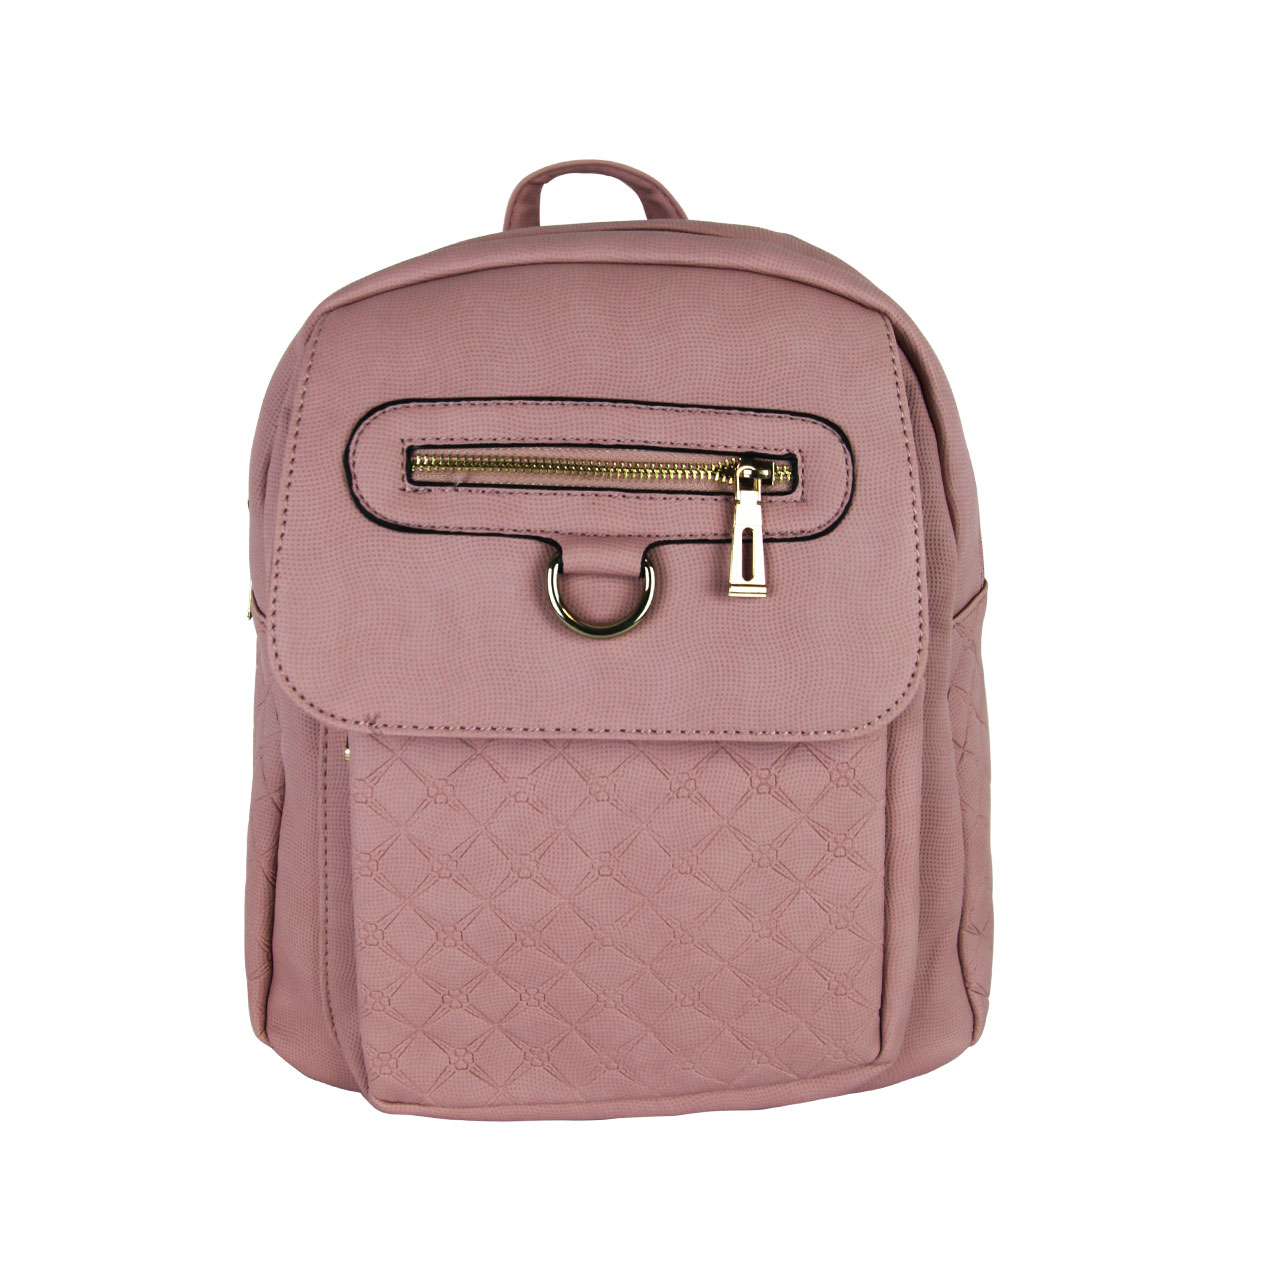 Simple Rose Garment Backpack Bag